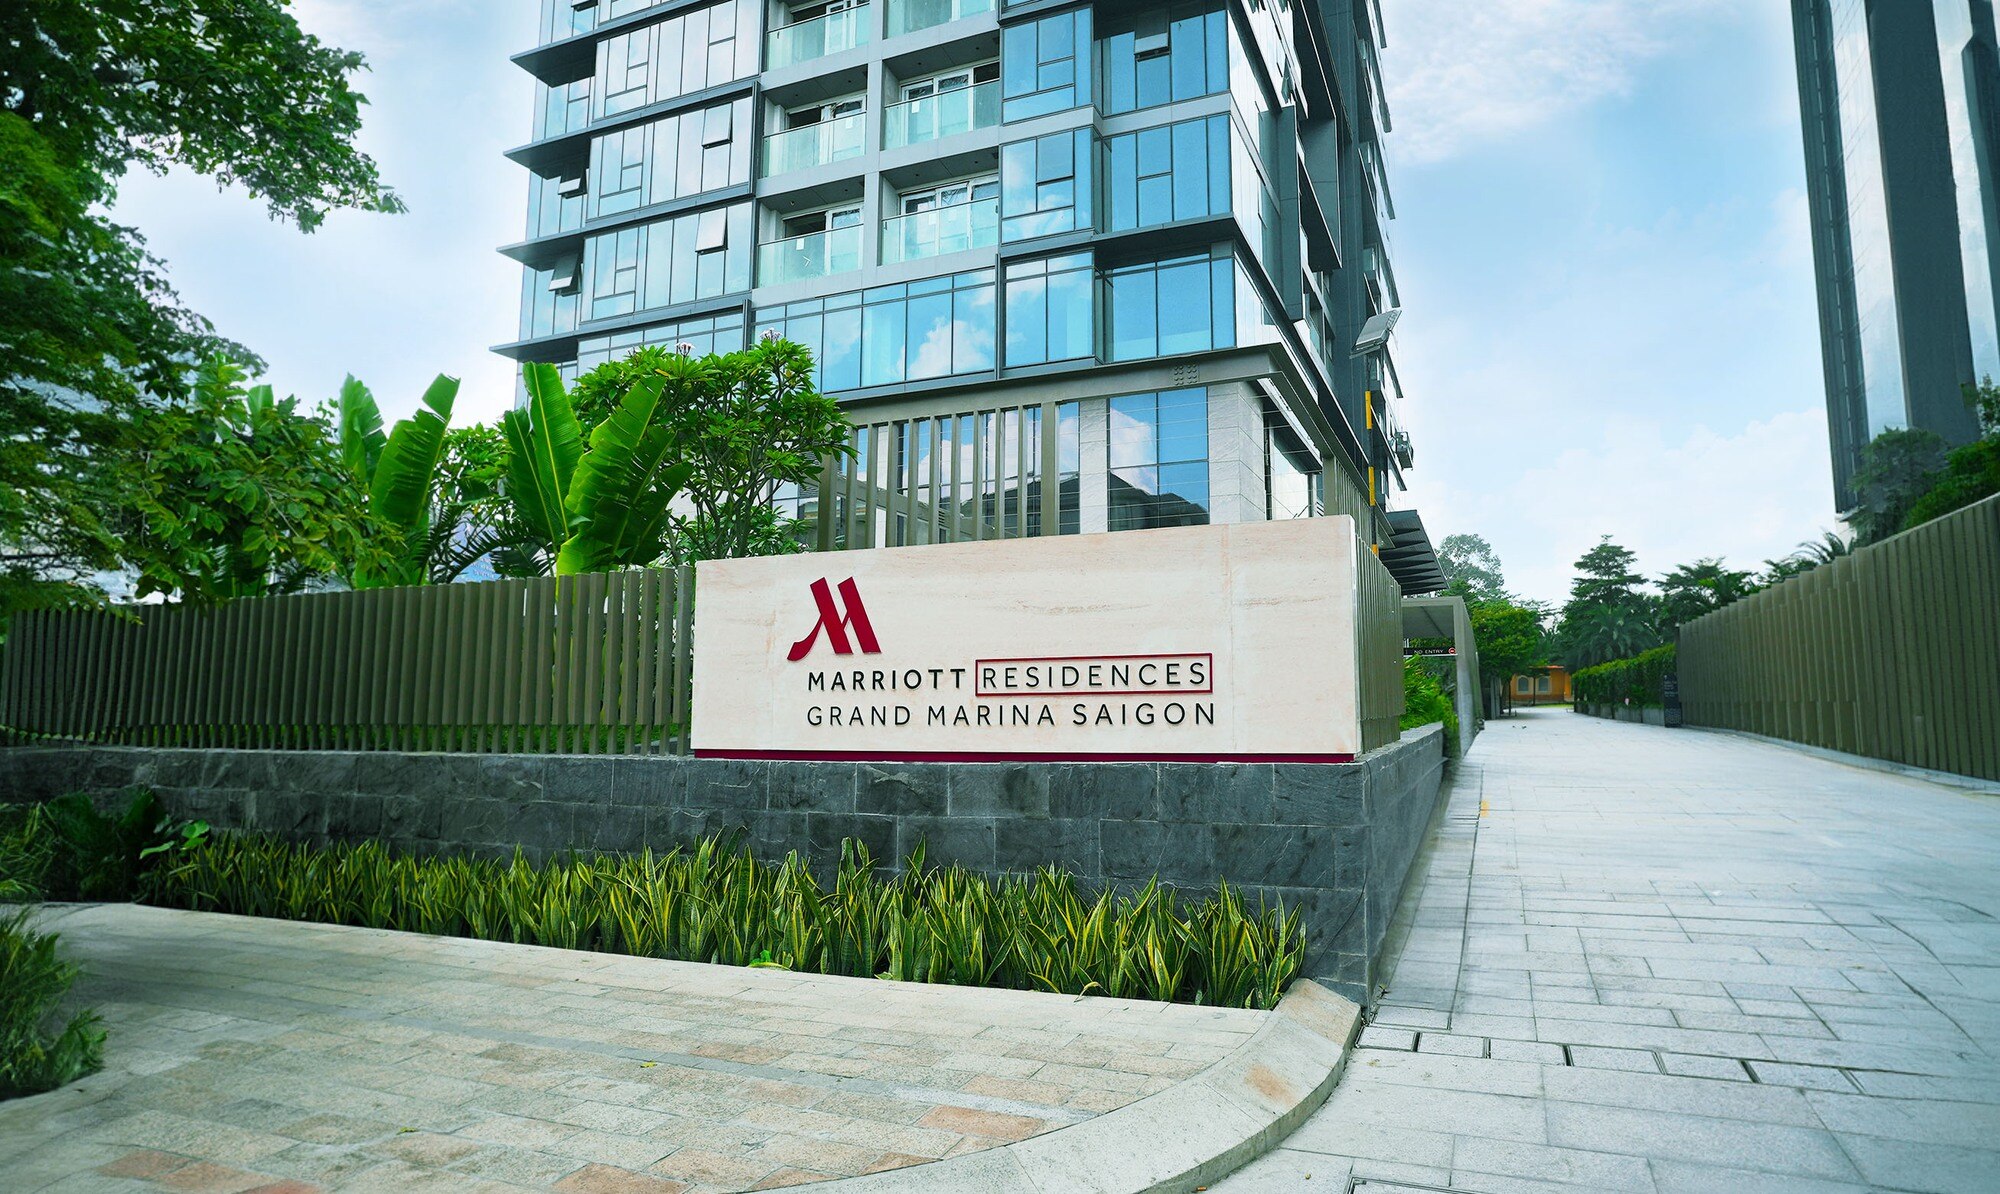 Marriott đã bắt đầu vận hành tòa căn hộ hàng hiệu đầu tiên tại Việt Nam - Ảnh 2.